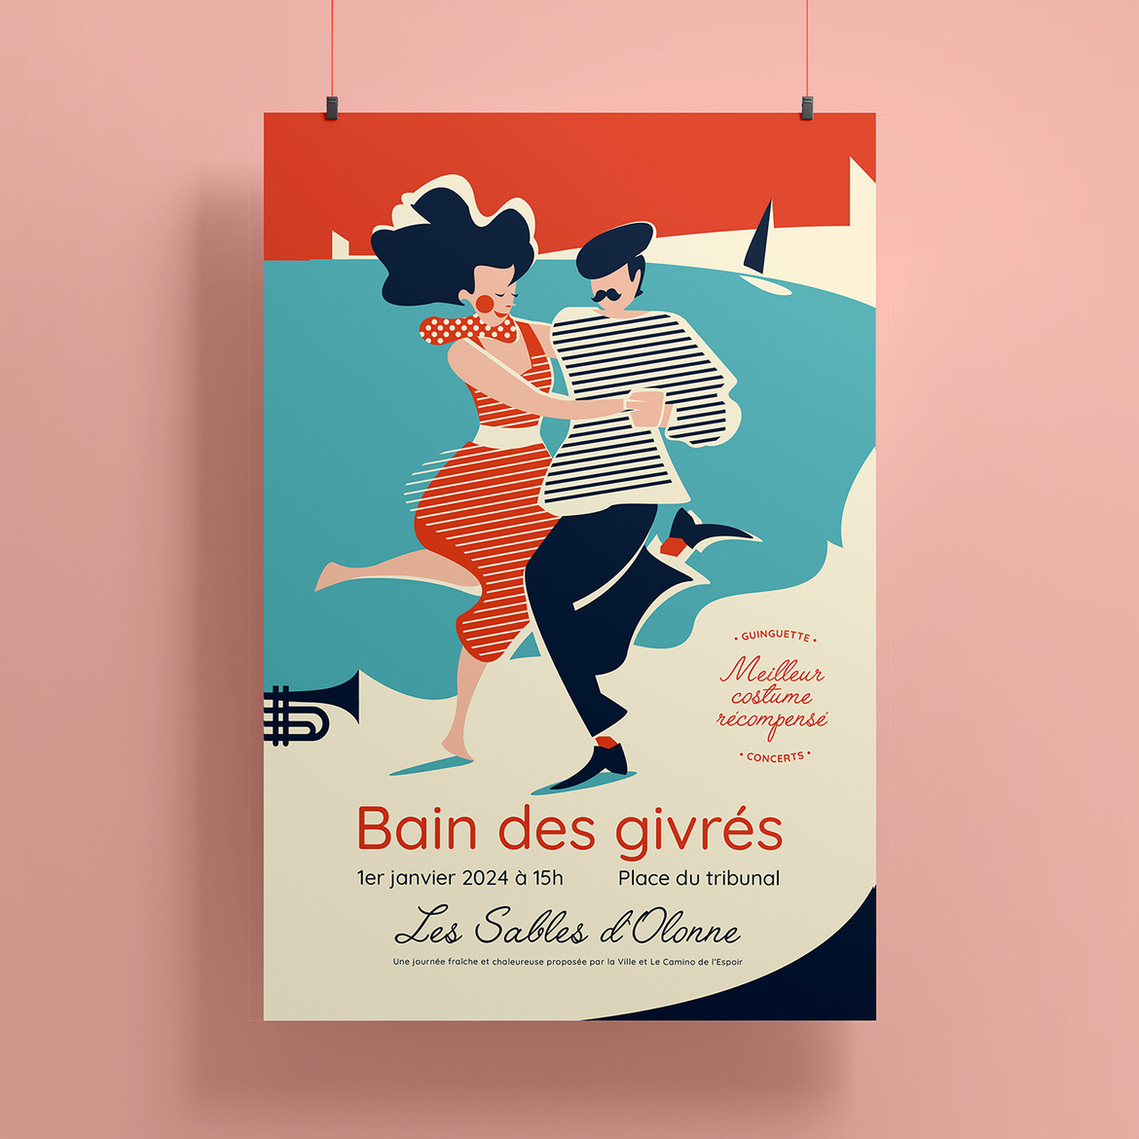 Bain des givrés - 2014 - Les Sables d'Olonne aglomération - AO non retenu - atelier Blanc papier - Célia Charrier